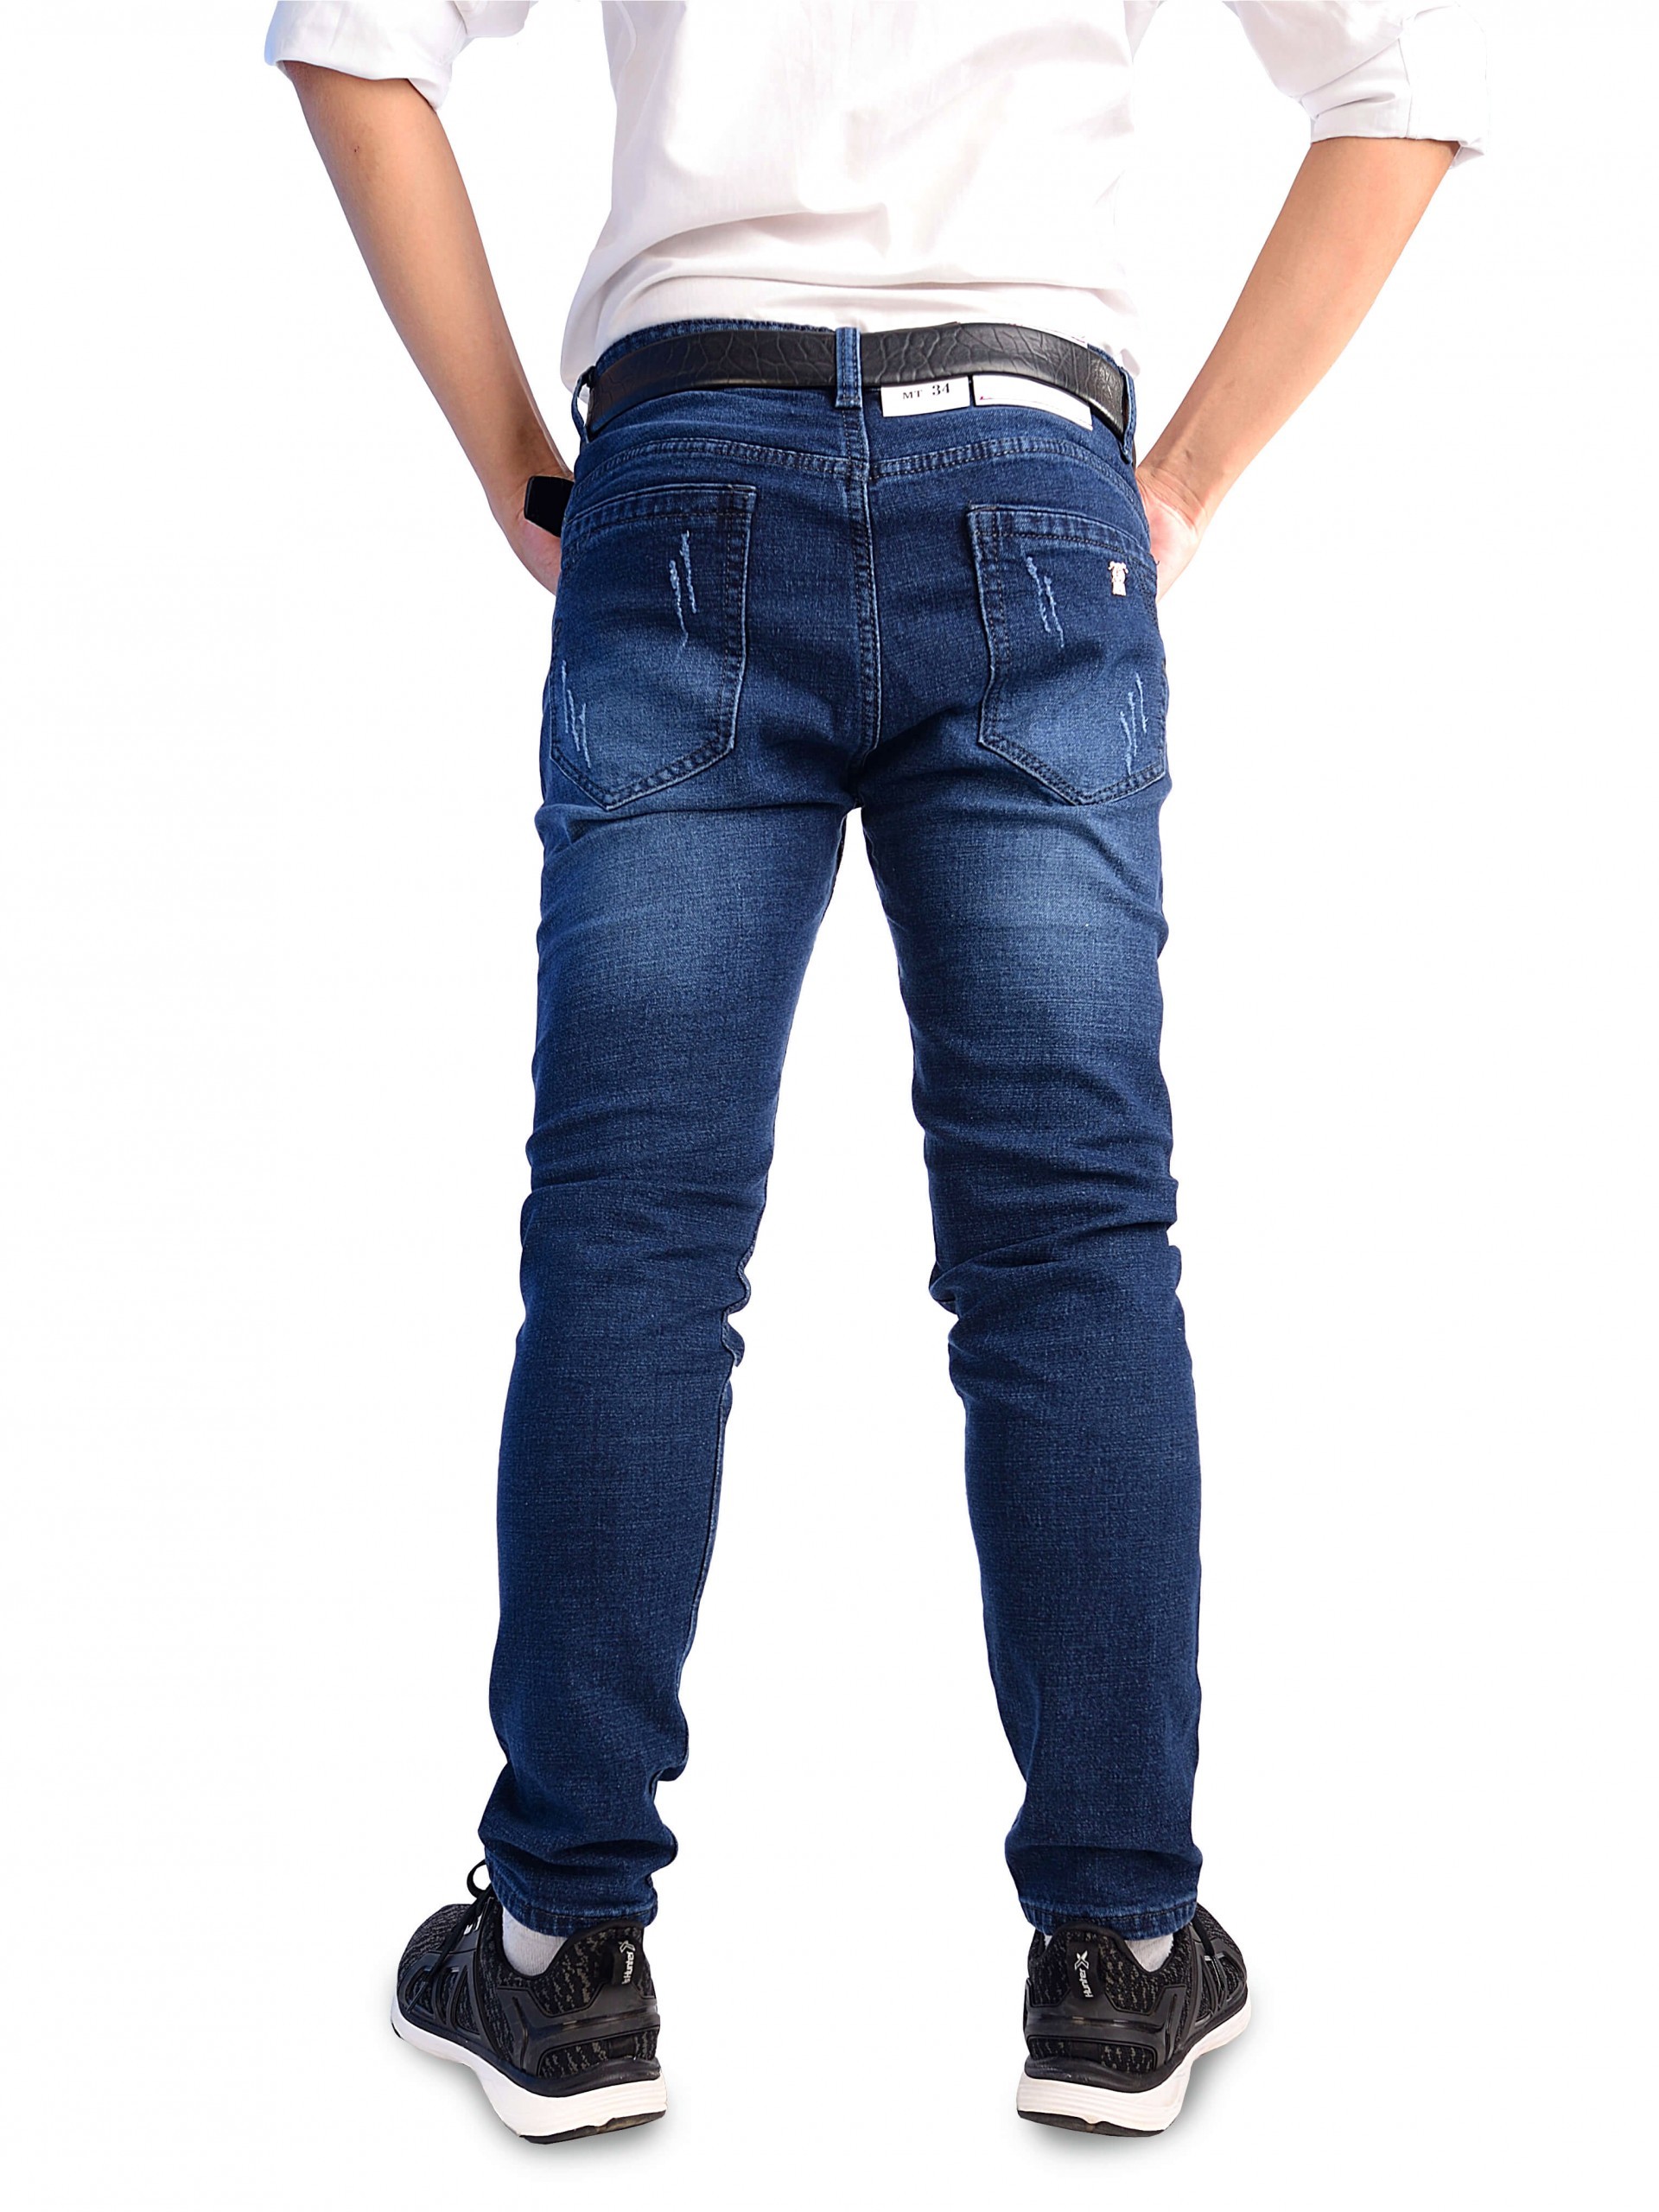 Mặc jeans ống côn như thế nào đẹp nhất?